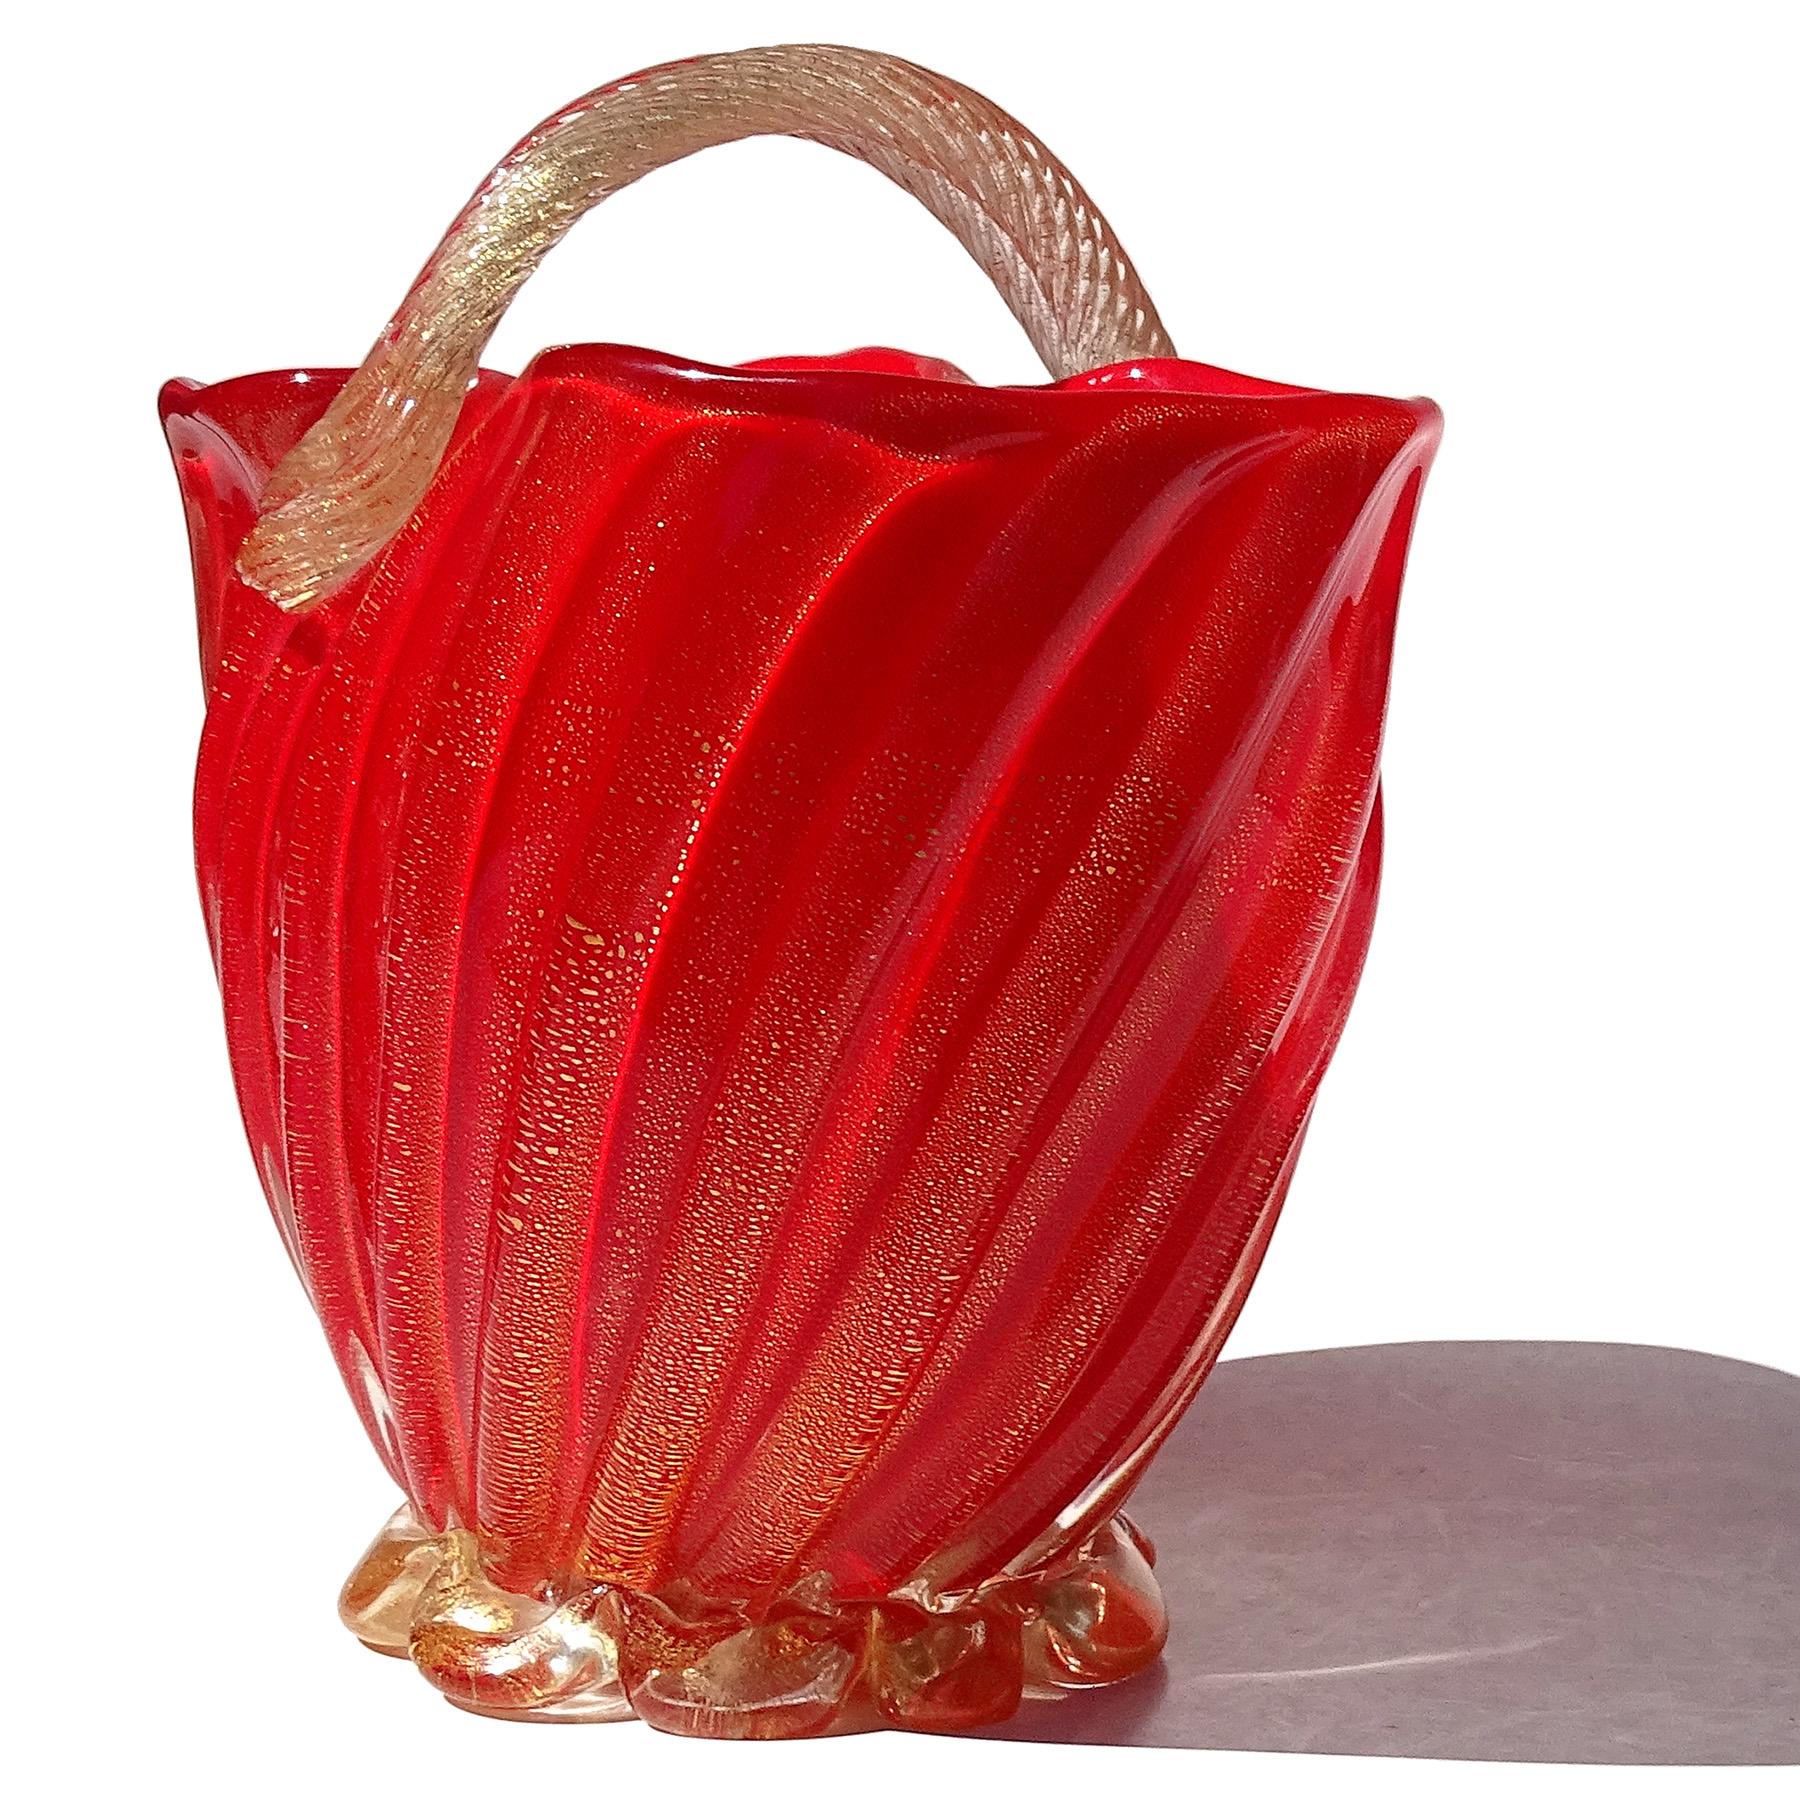 Seguso Murano 1950s Coral Red Gold Flecks Italian Art Glass Flower Basket Vase For Sale 1